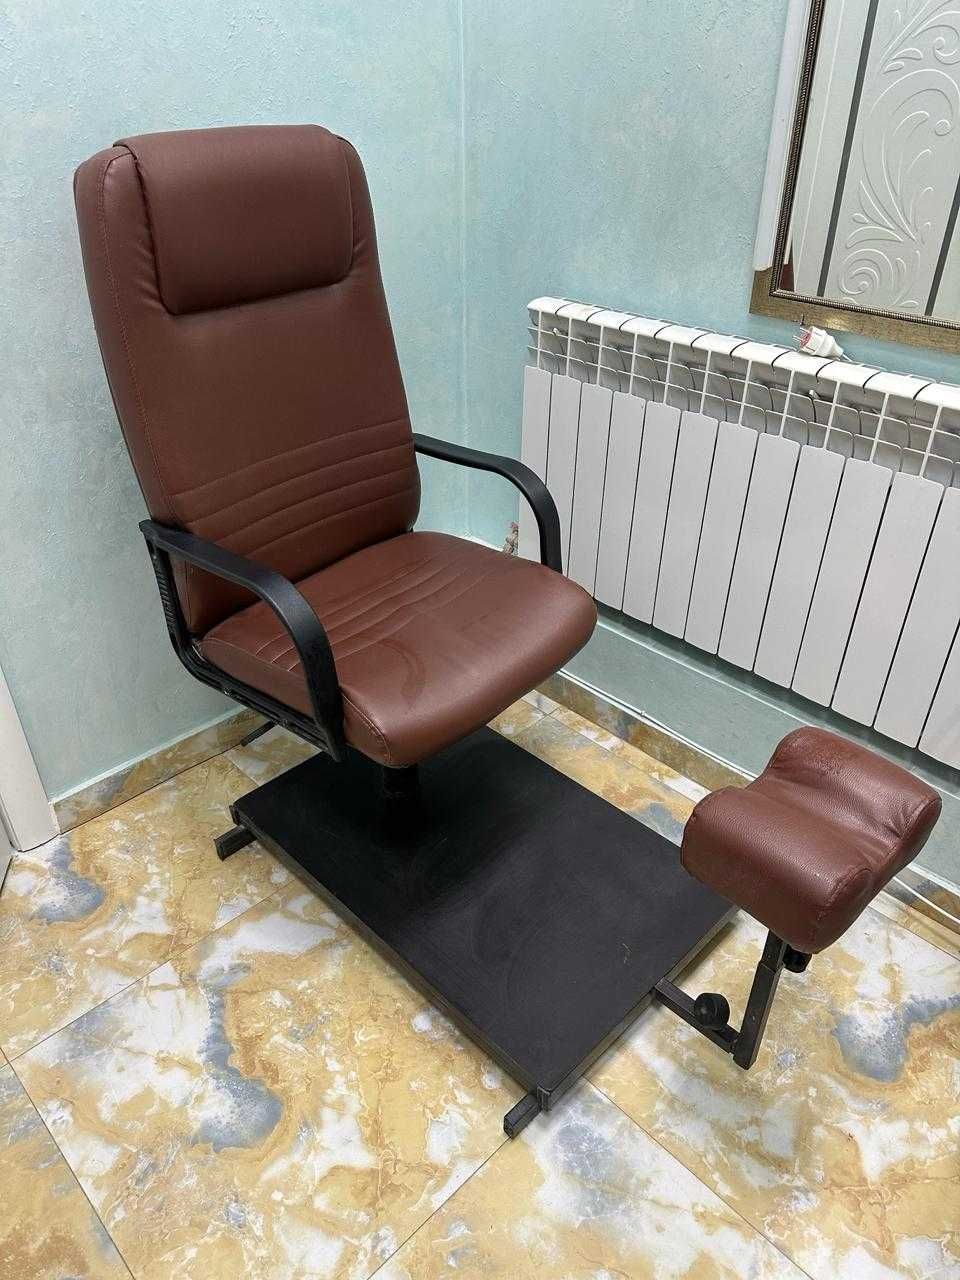 Продается Педикюрное кресло